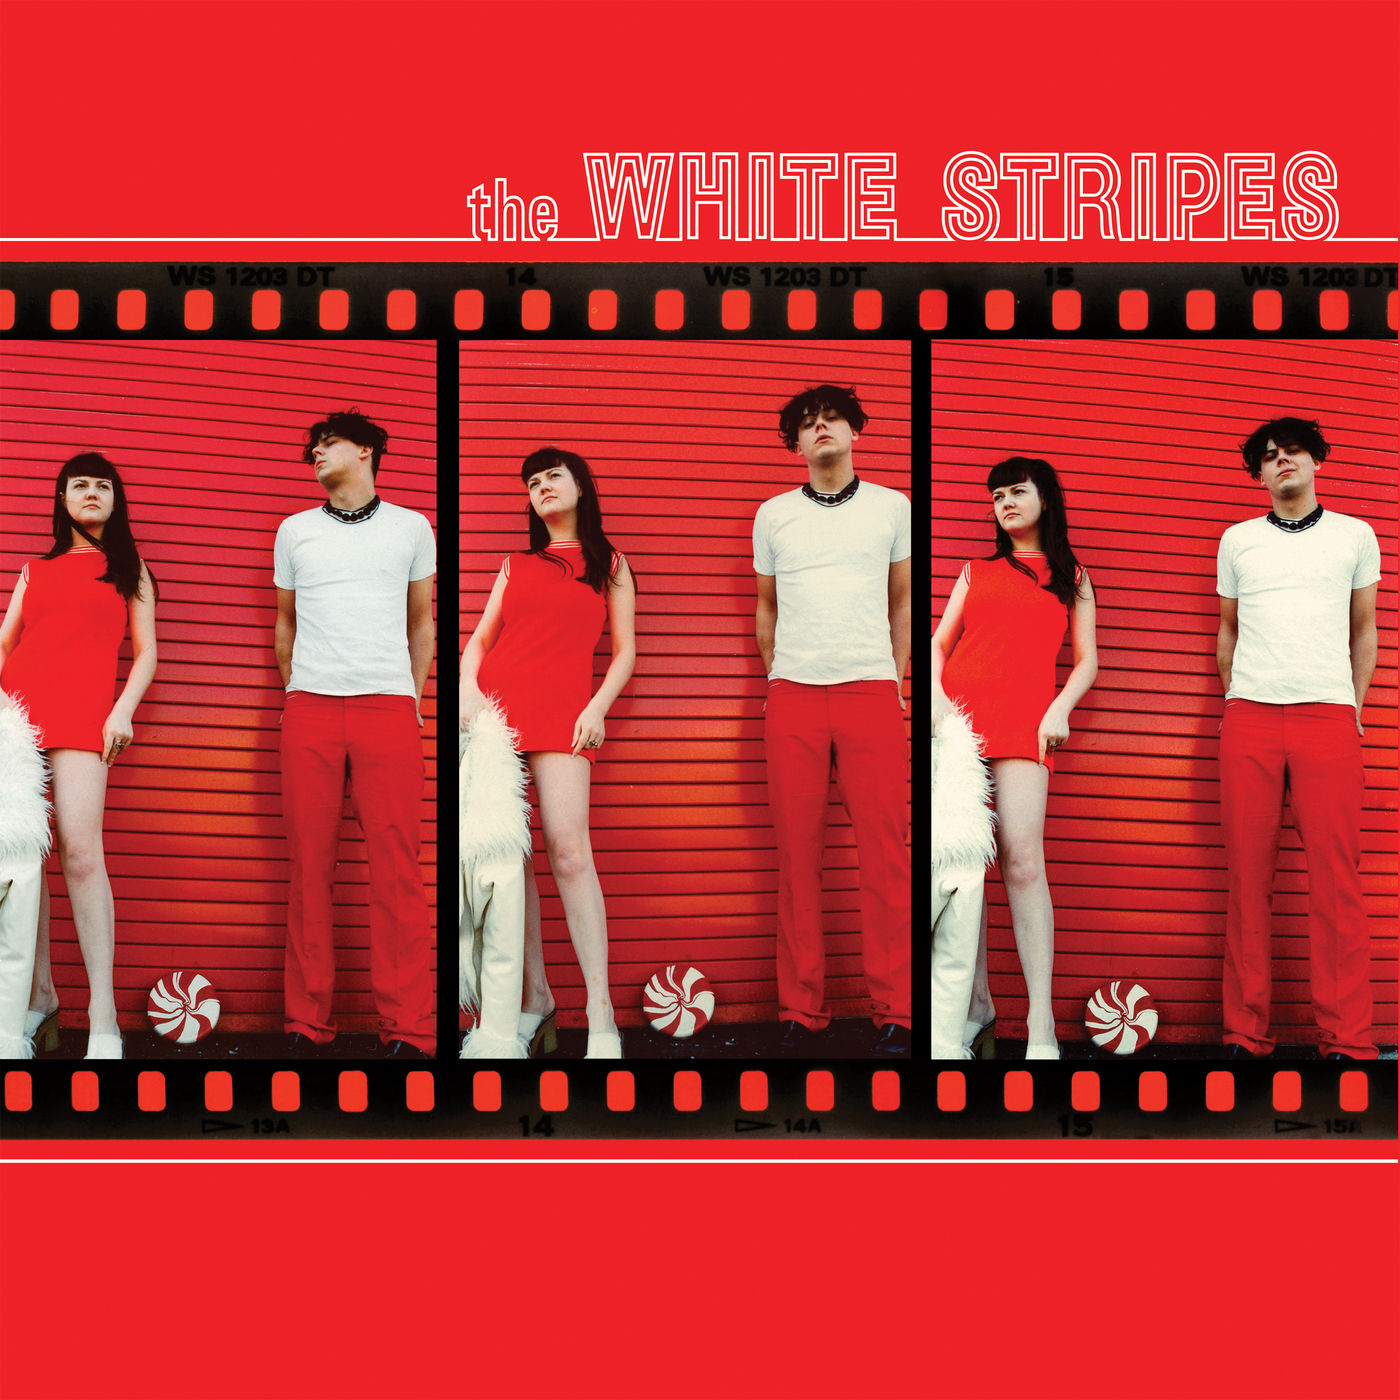 The White Stripes - The White Stripes (1999/2021) [FLAC 24bit/192kHz]